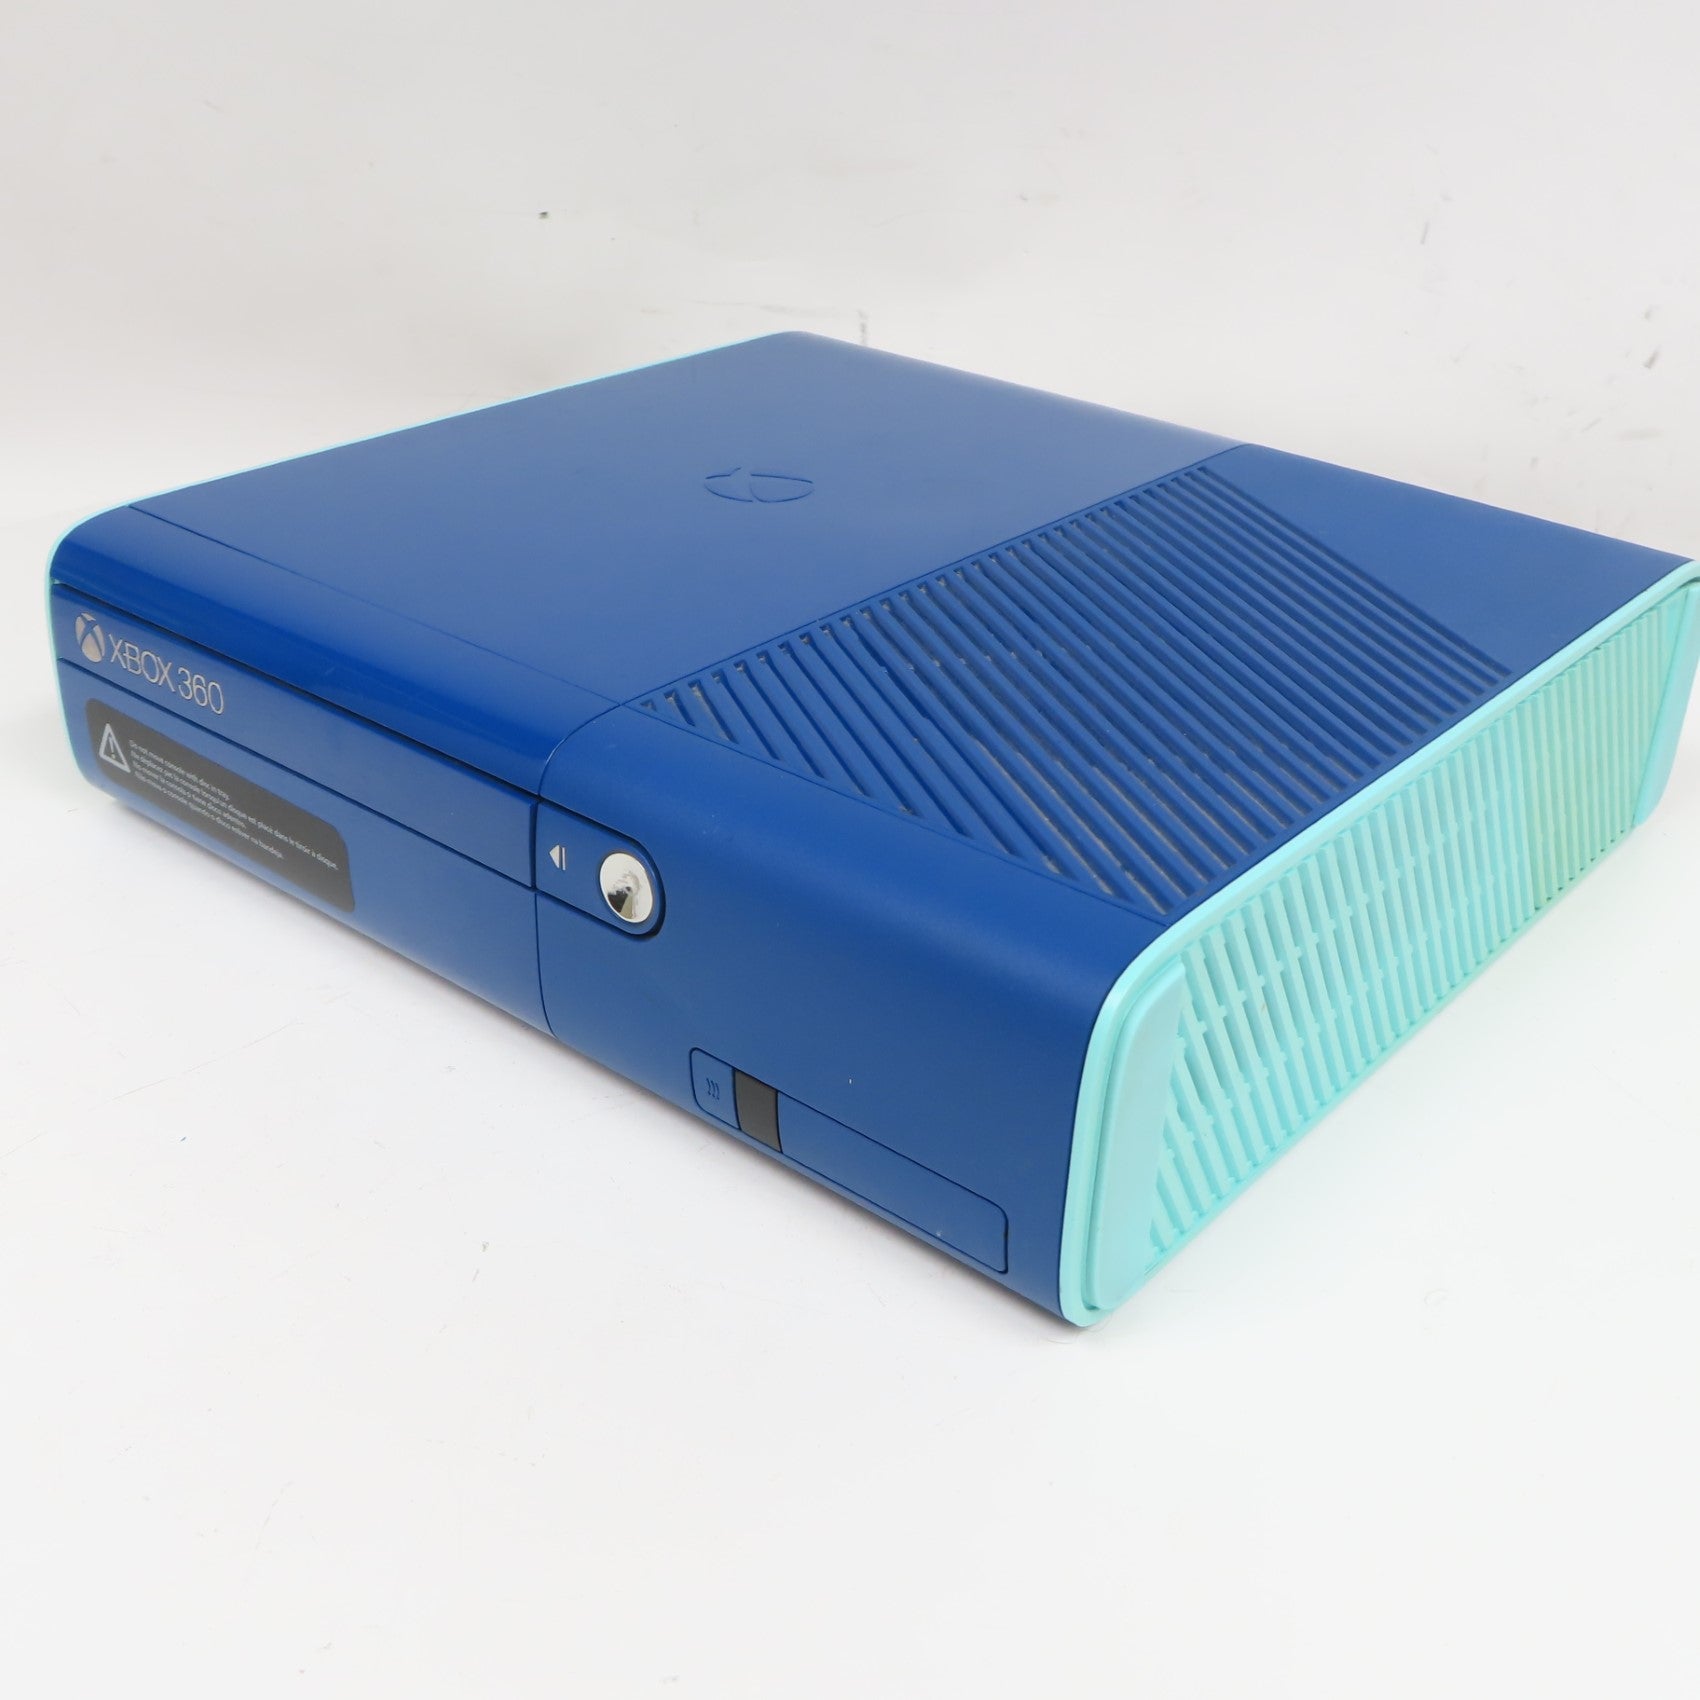 Xbox 360 E 500GB Console - Blue